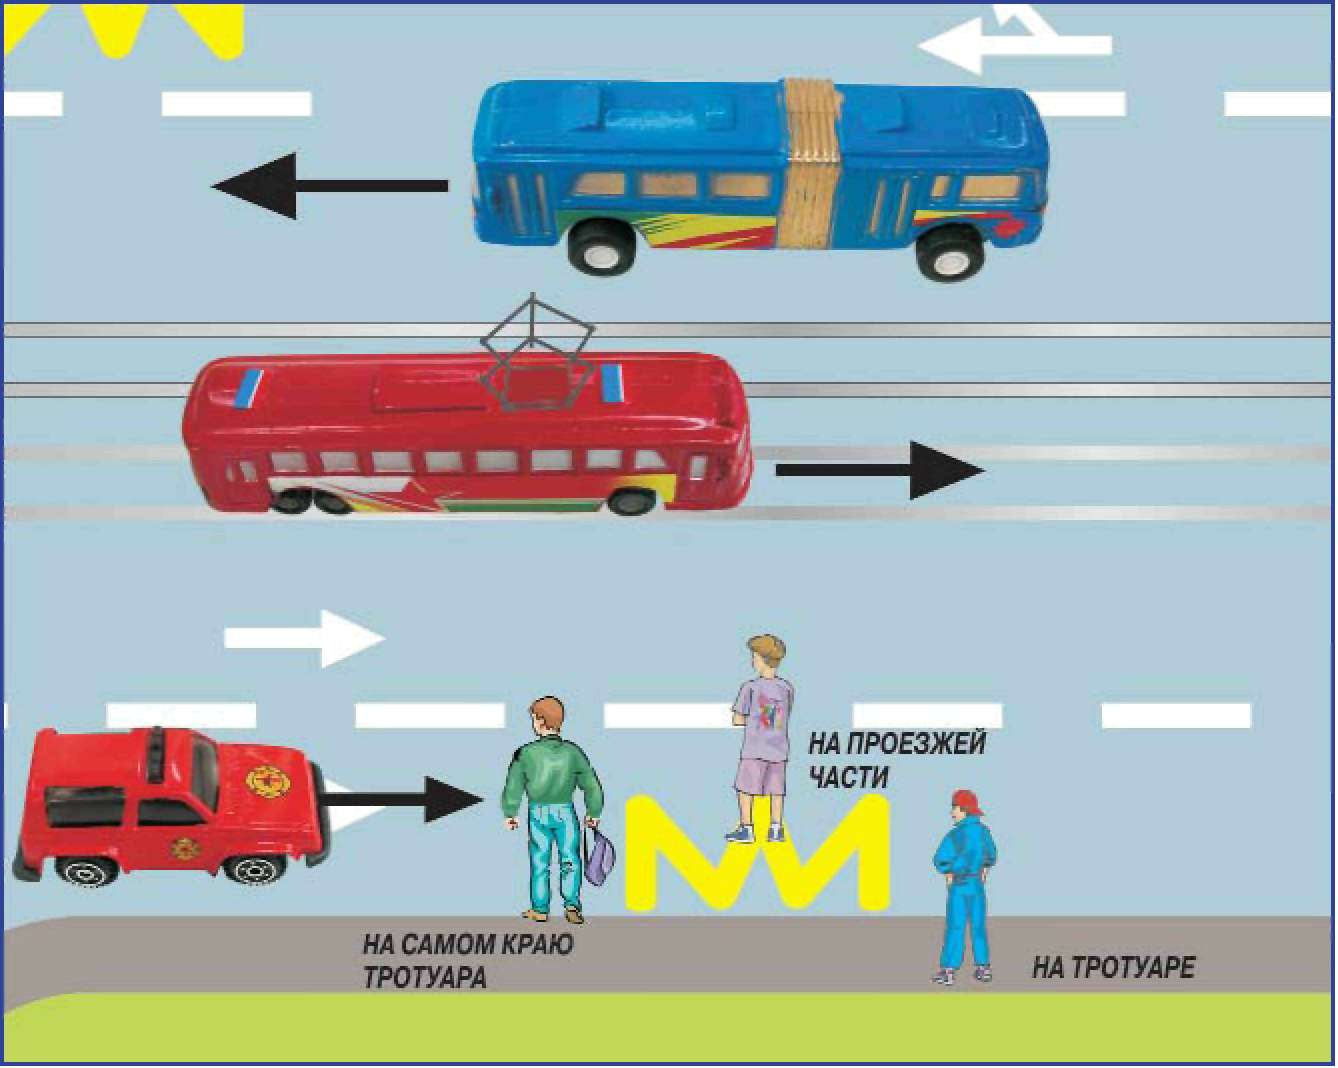 Методы и формы проведения практических занятий в автогородке с обучающимися 1-4 классов по основам безопасного поведения на дорогах